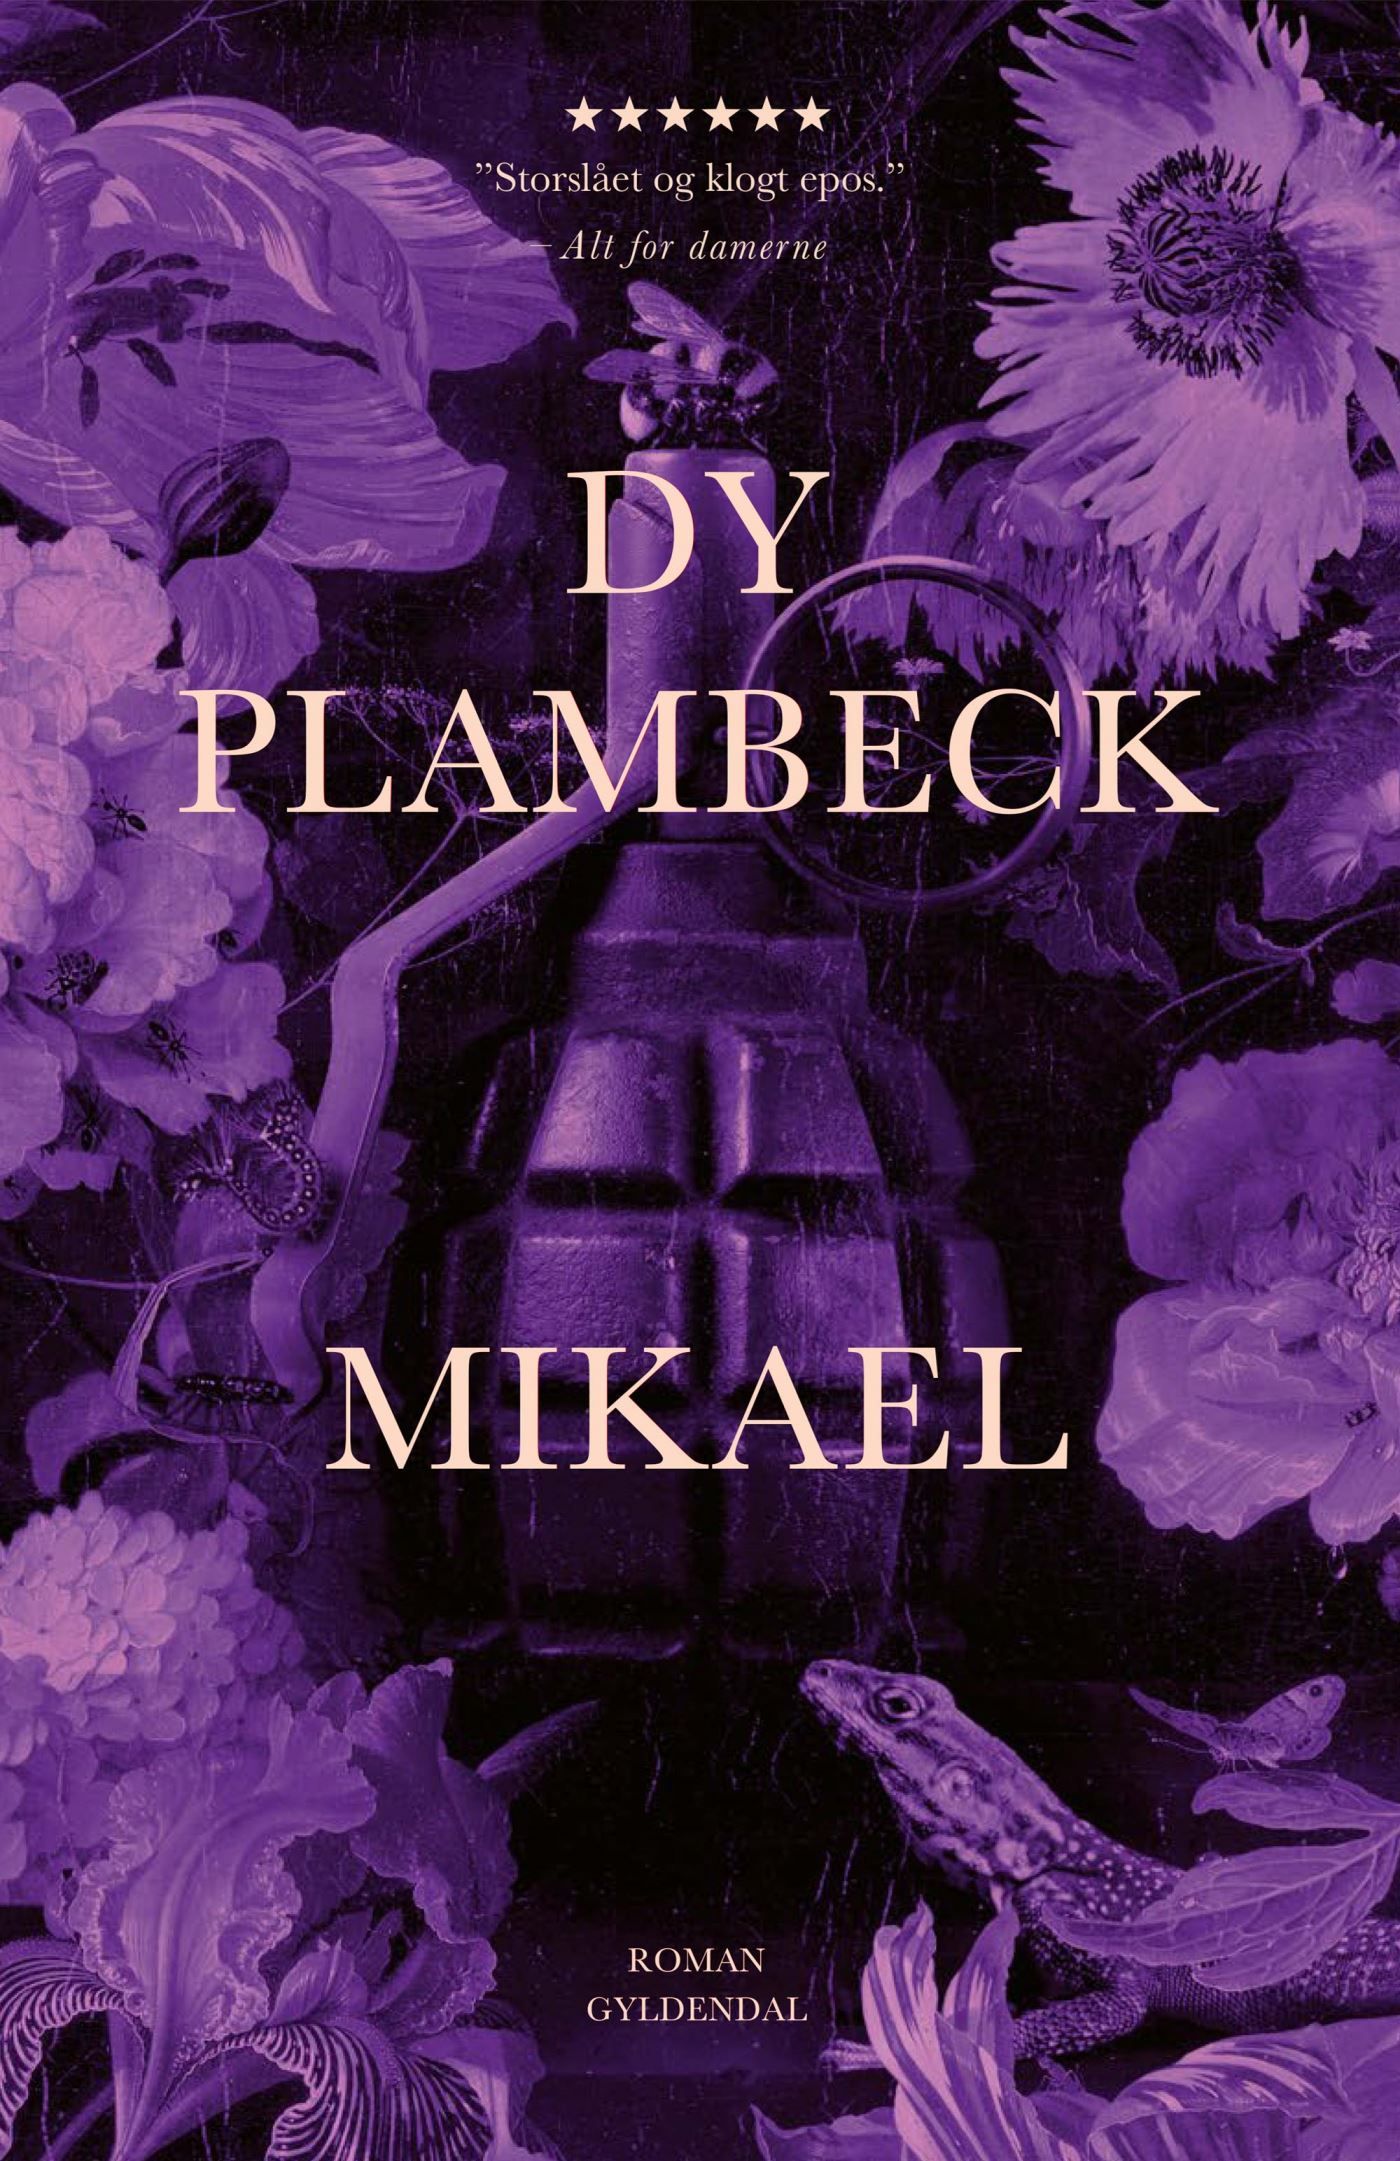 Mikael, ljudbok av Dy Plambeck